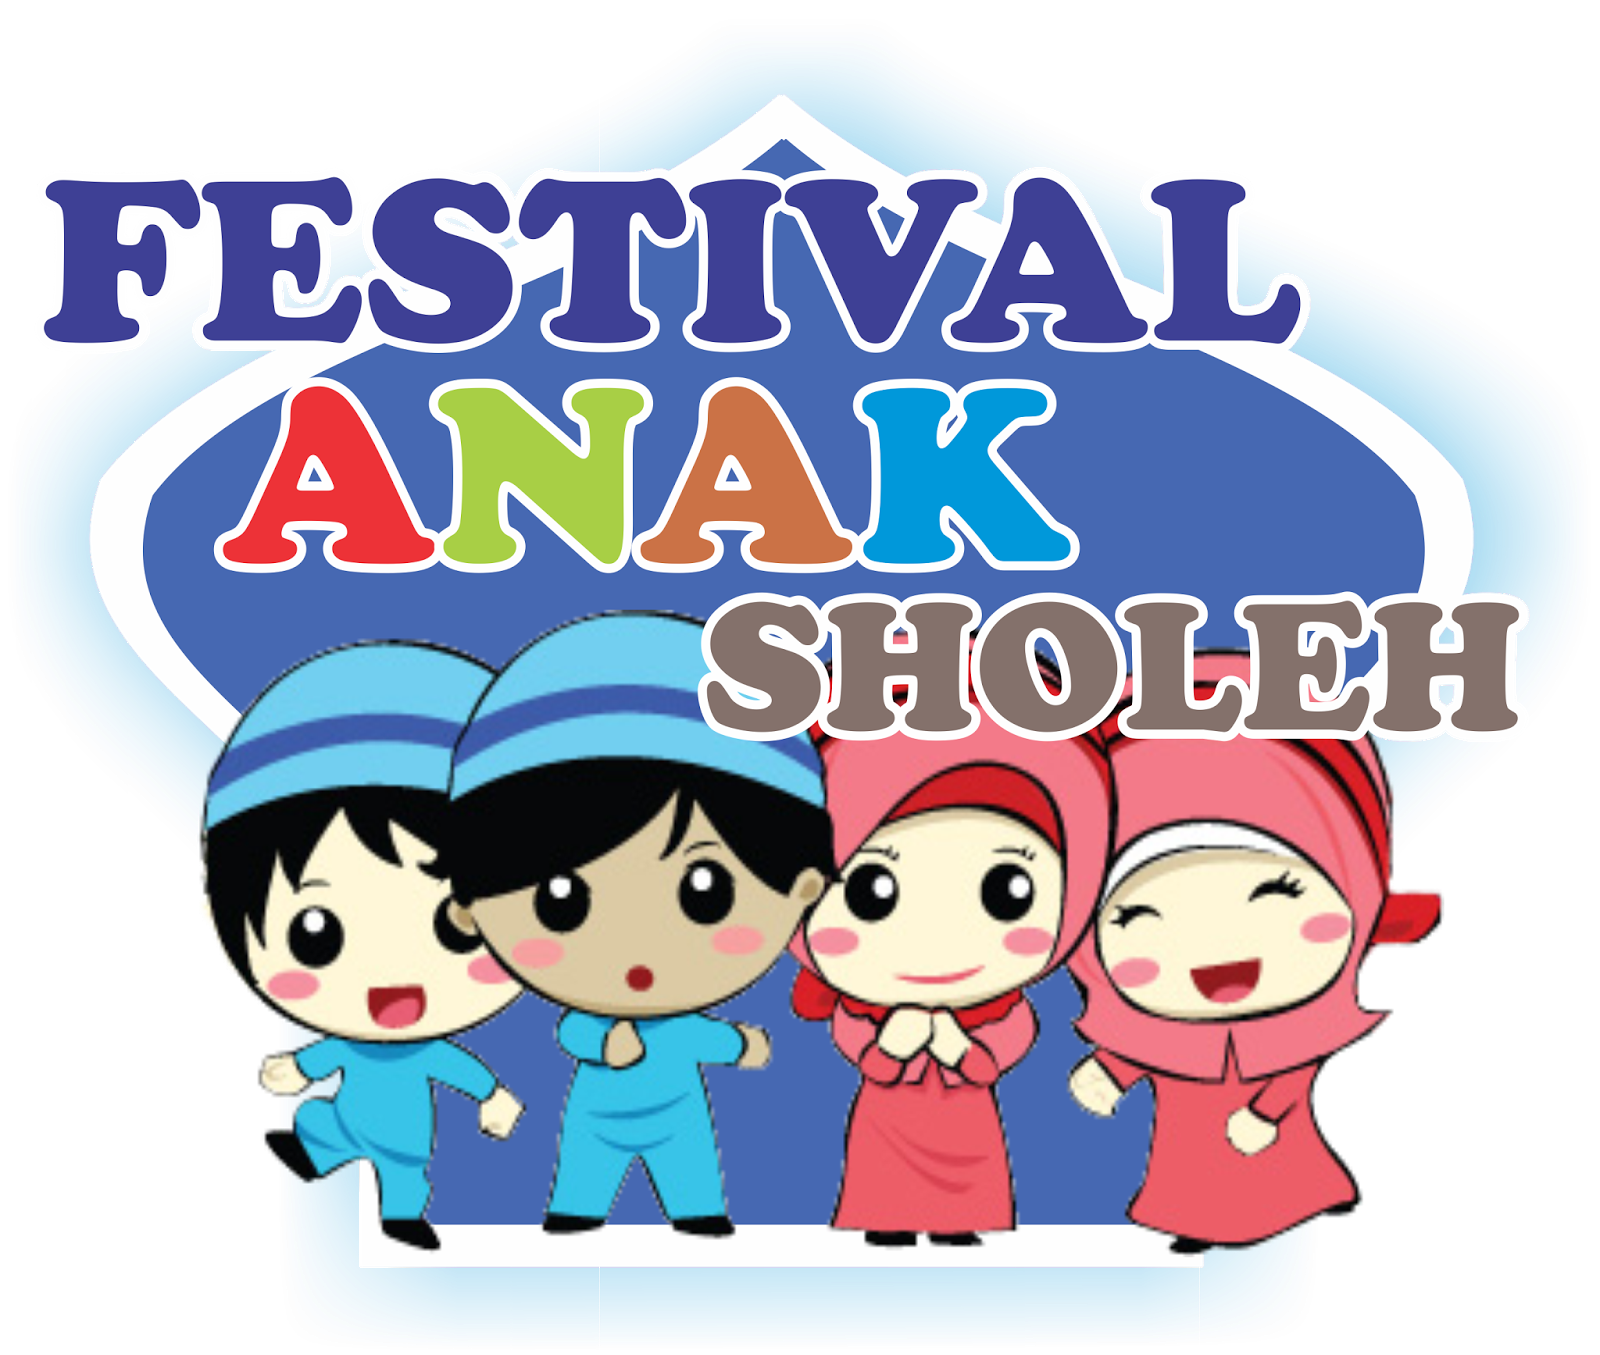 25+ Best Looking For Contoh Spanduk Festival Anak Sholeh - Neverlandmis